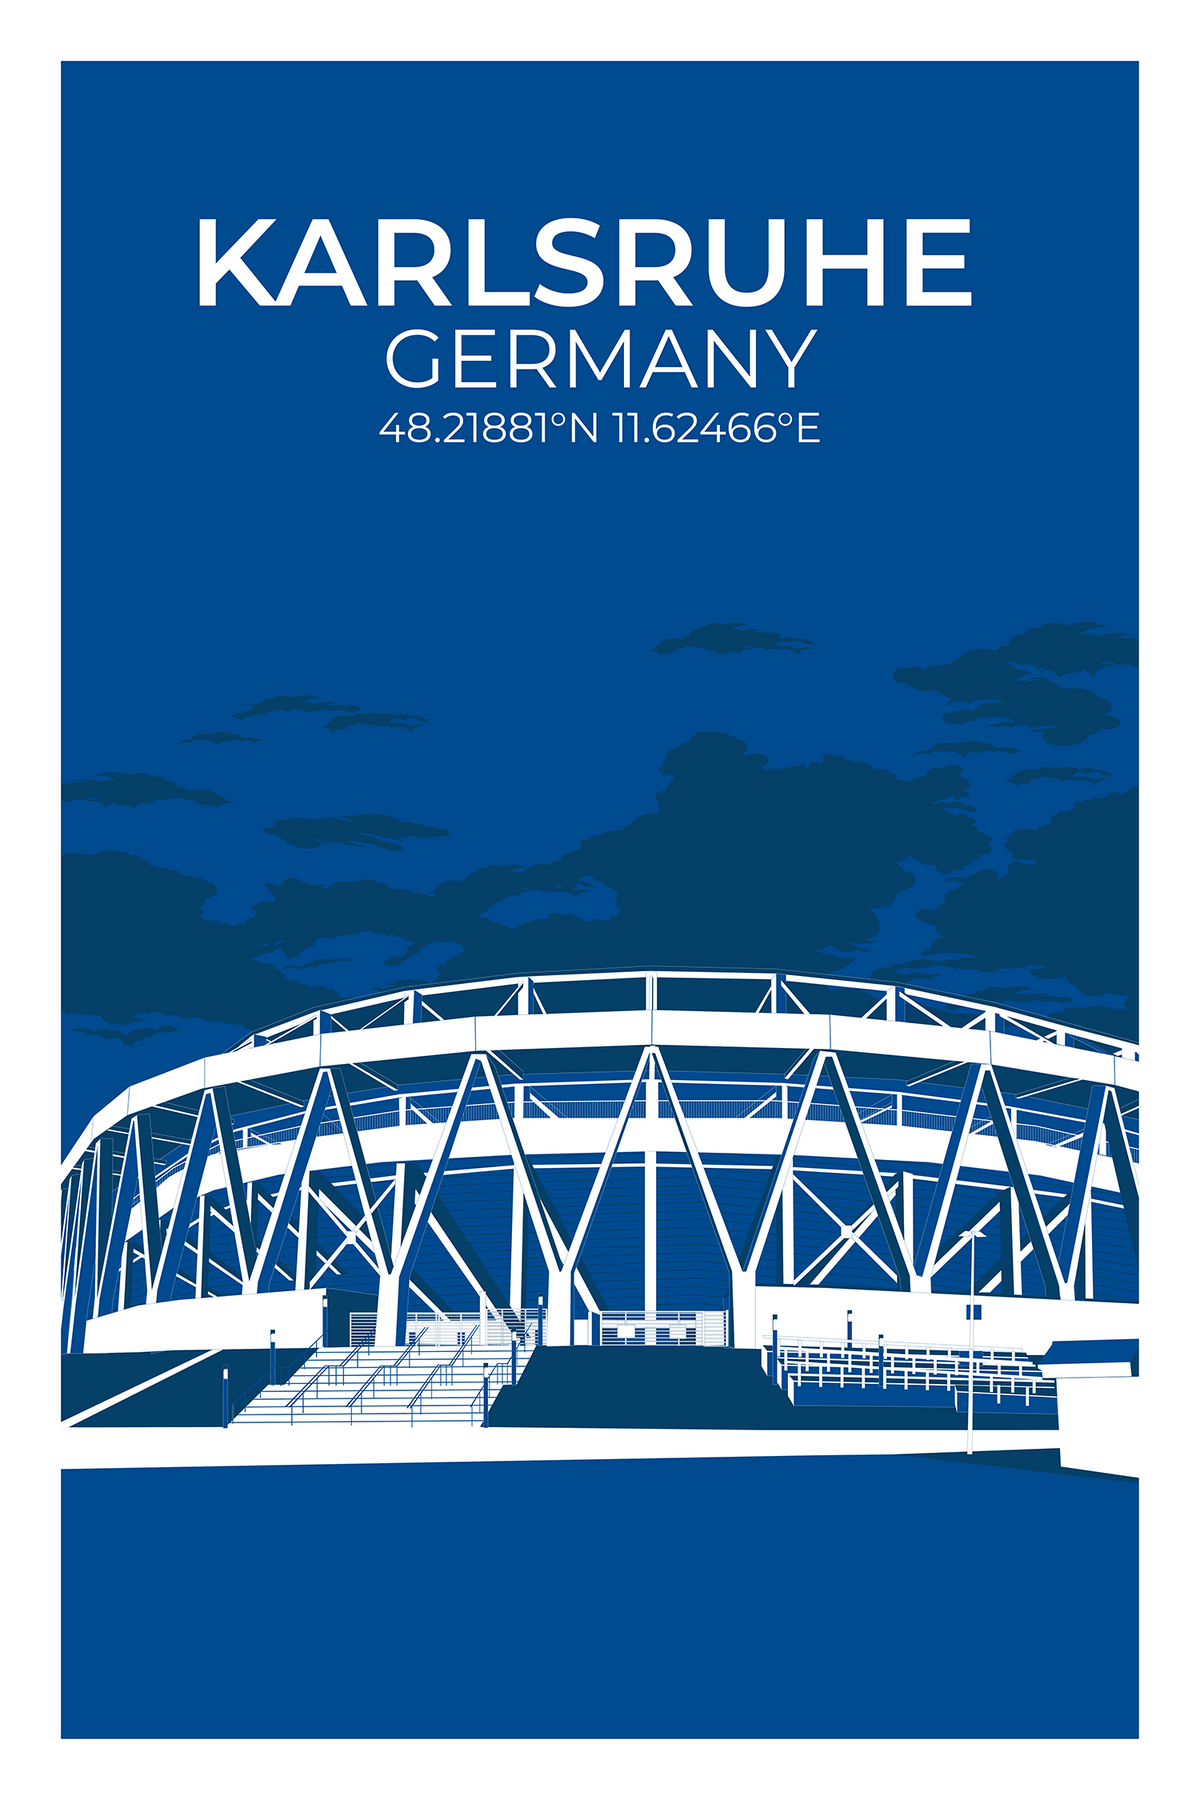 Stadion Illustration Poster Karlsruhe